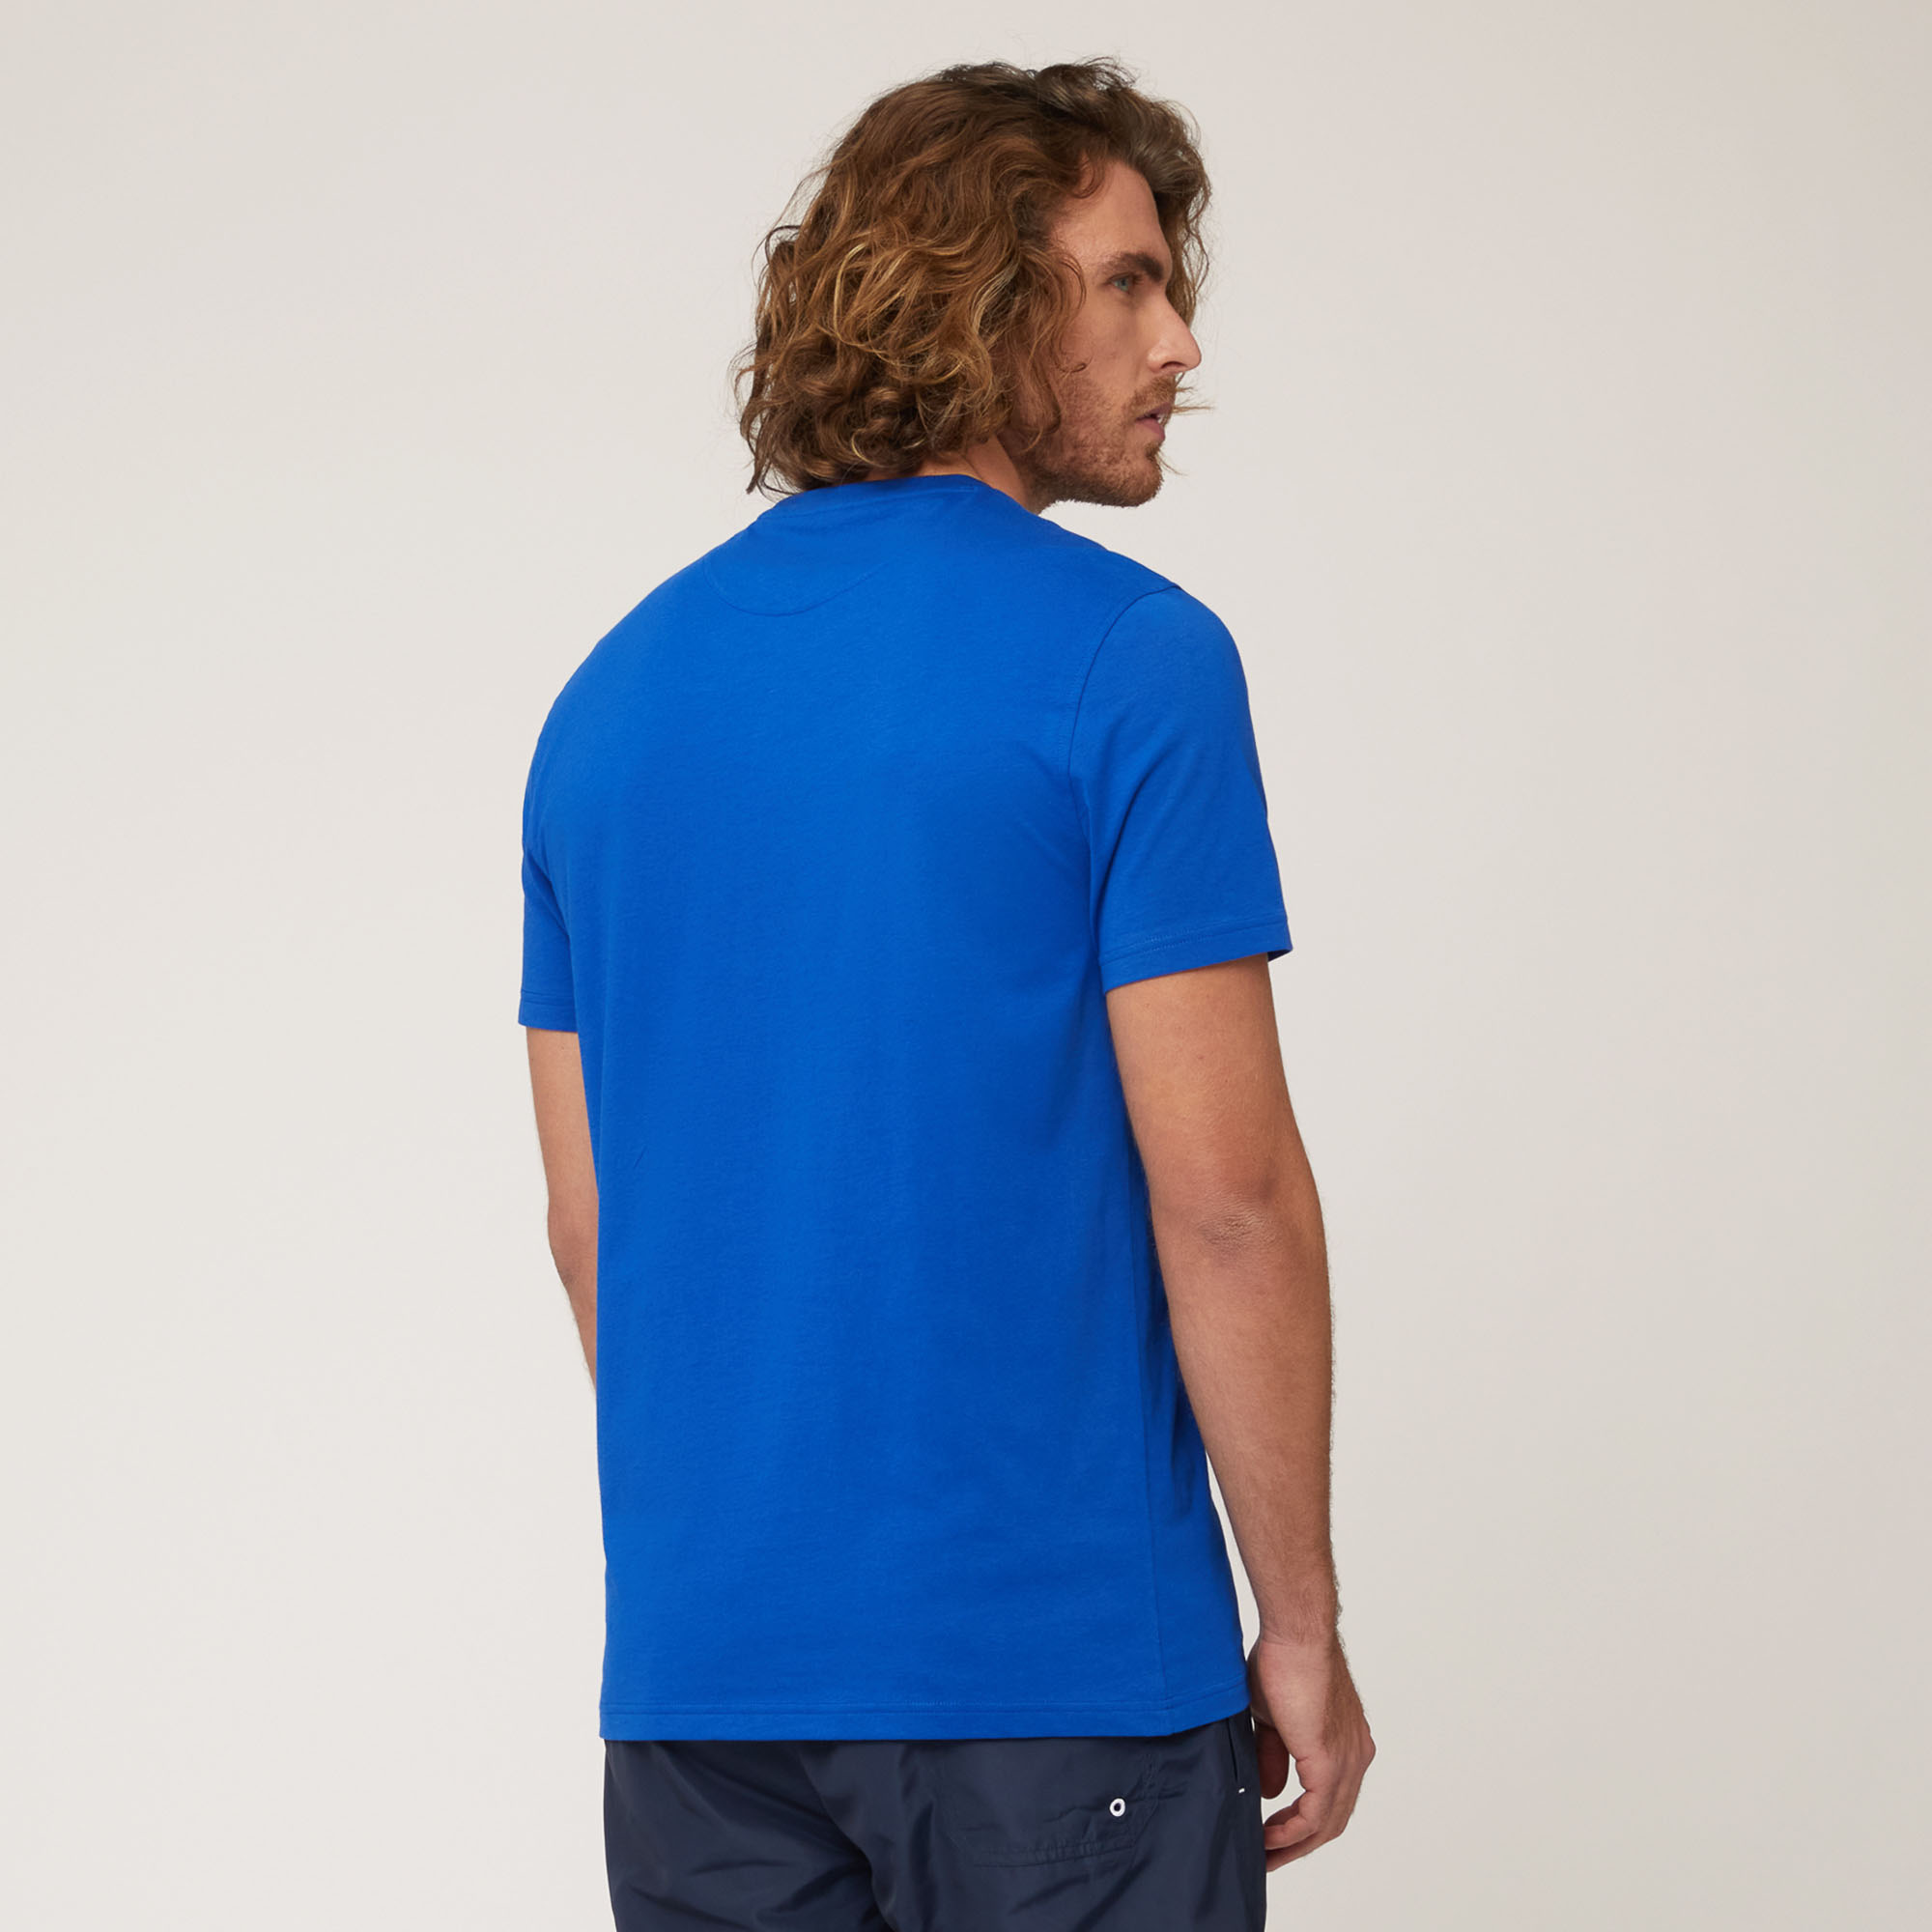 Amalfi Coast T-Shirt, Hydrangea, large image number 1